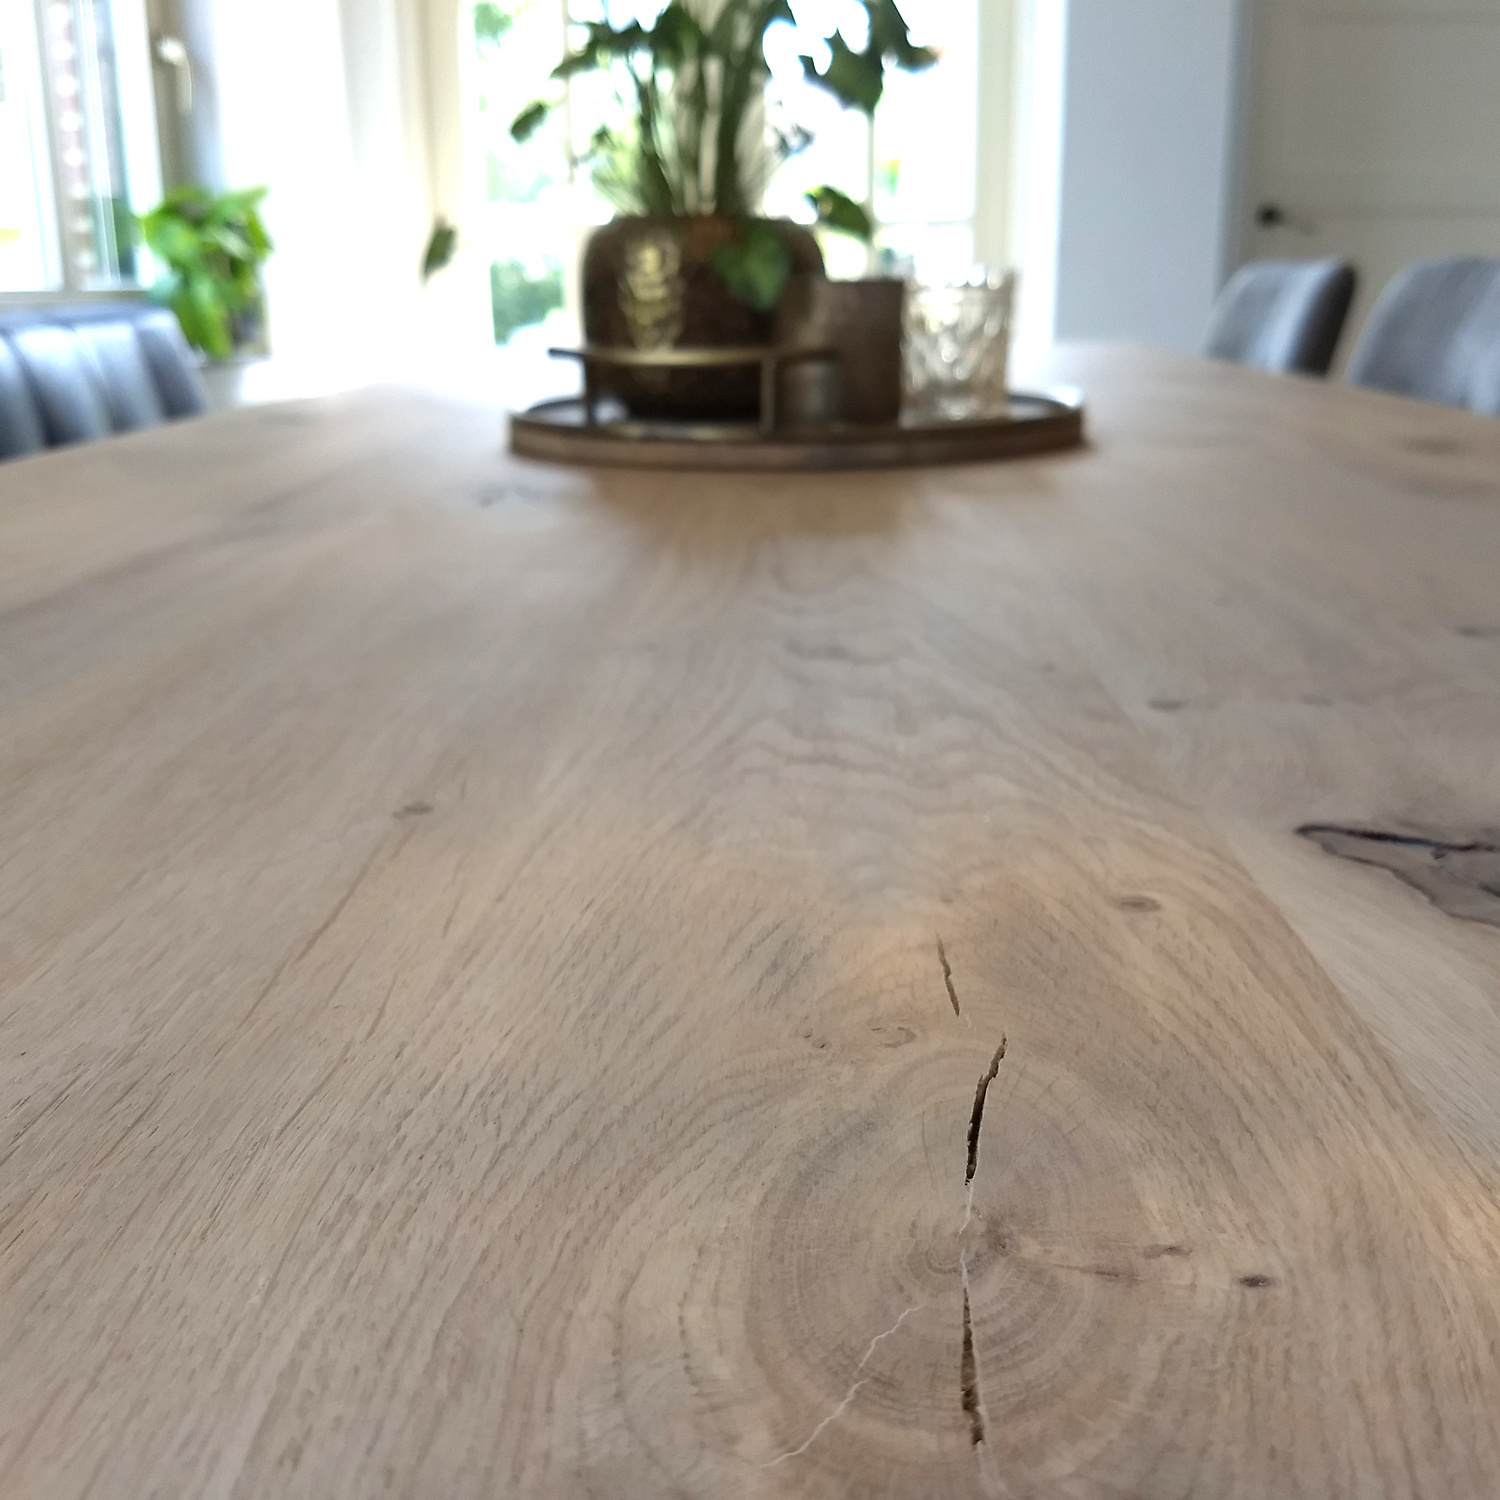  Tischplatte Eiche nach Maß - 4 cm dick (1-Schicht) - Breite Lamellen (10 - 12 cm breit) - Eichenholz rustikal - verleimt & künstlich getrocknet (HF 8-12%) - 50-120x50-248 cm